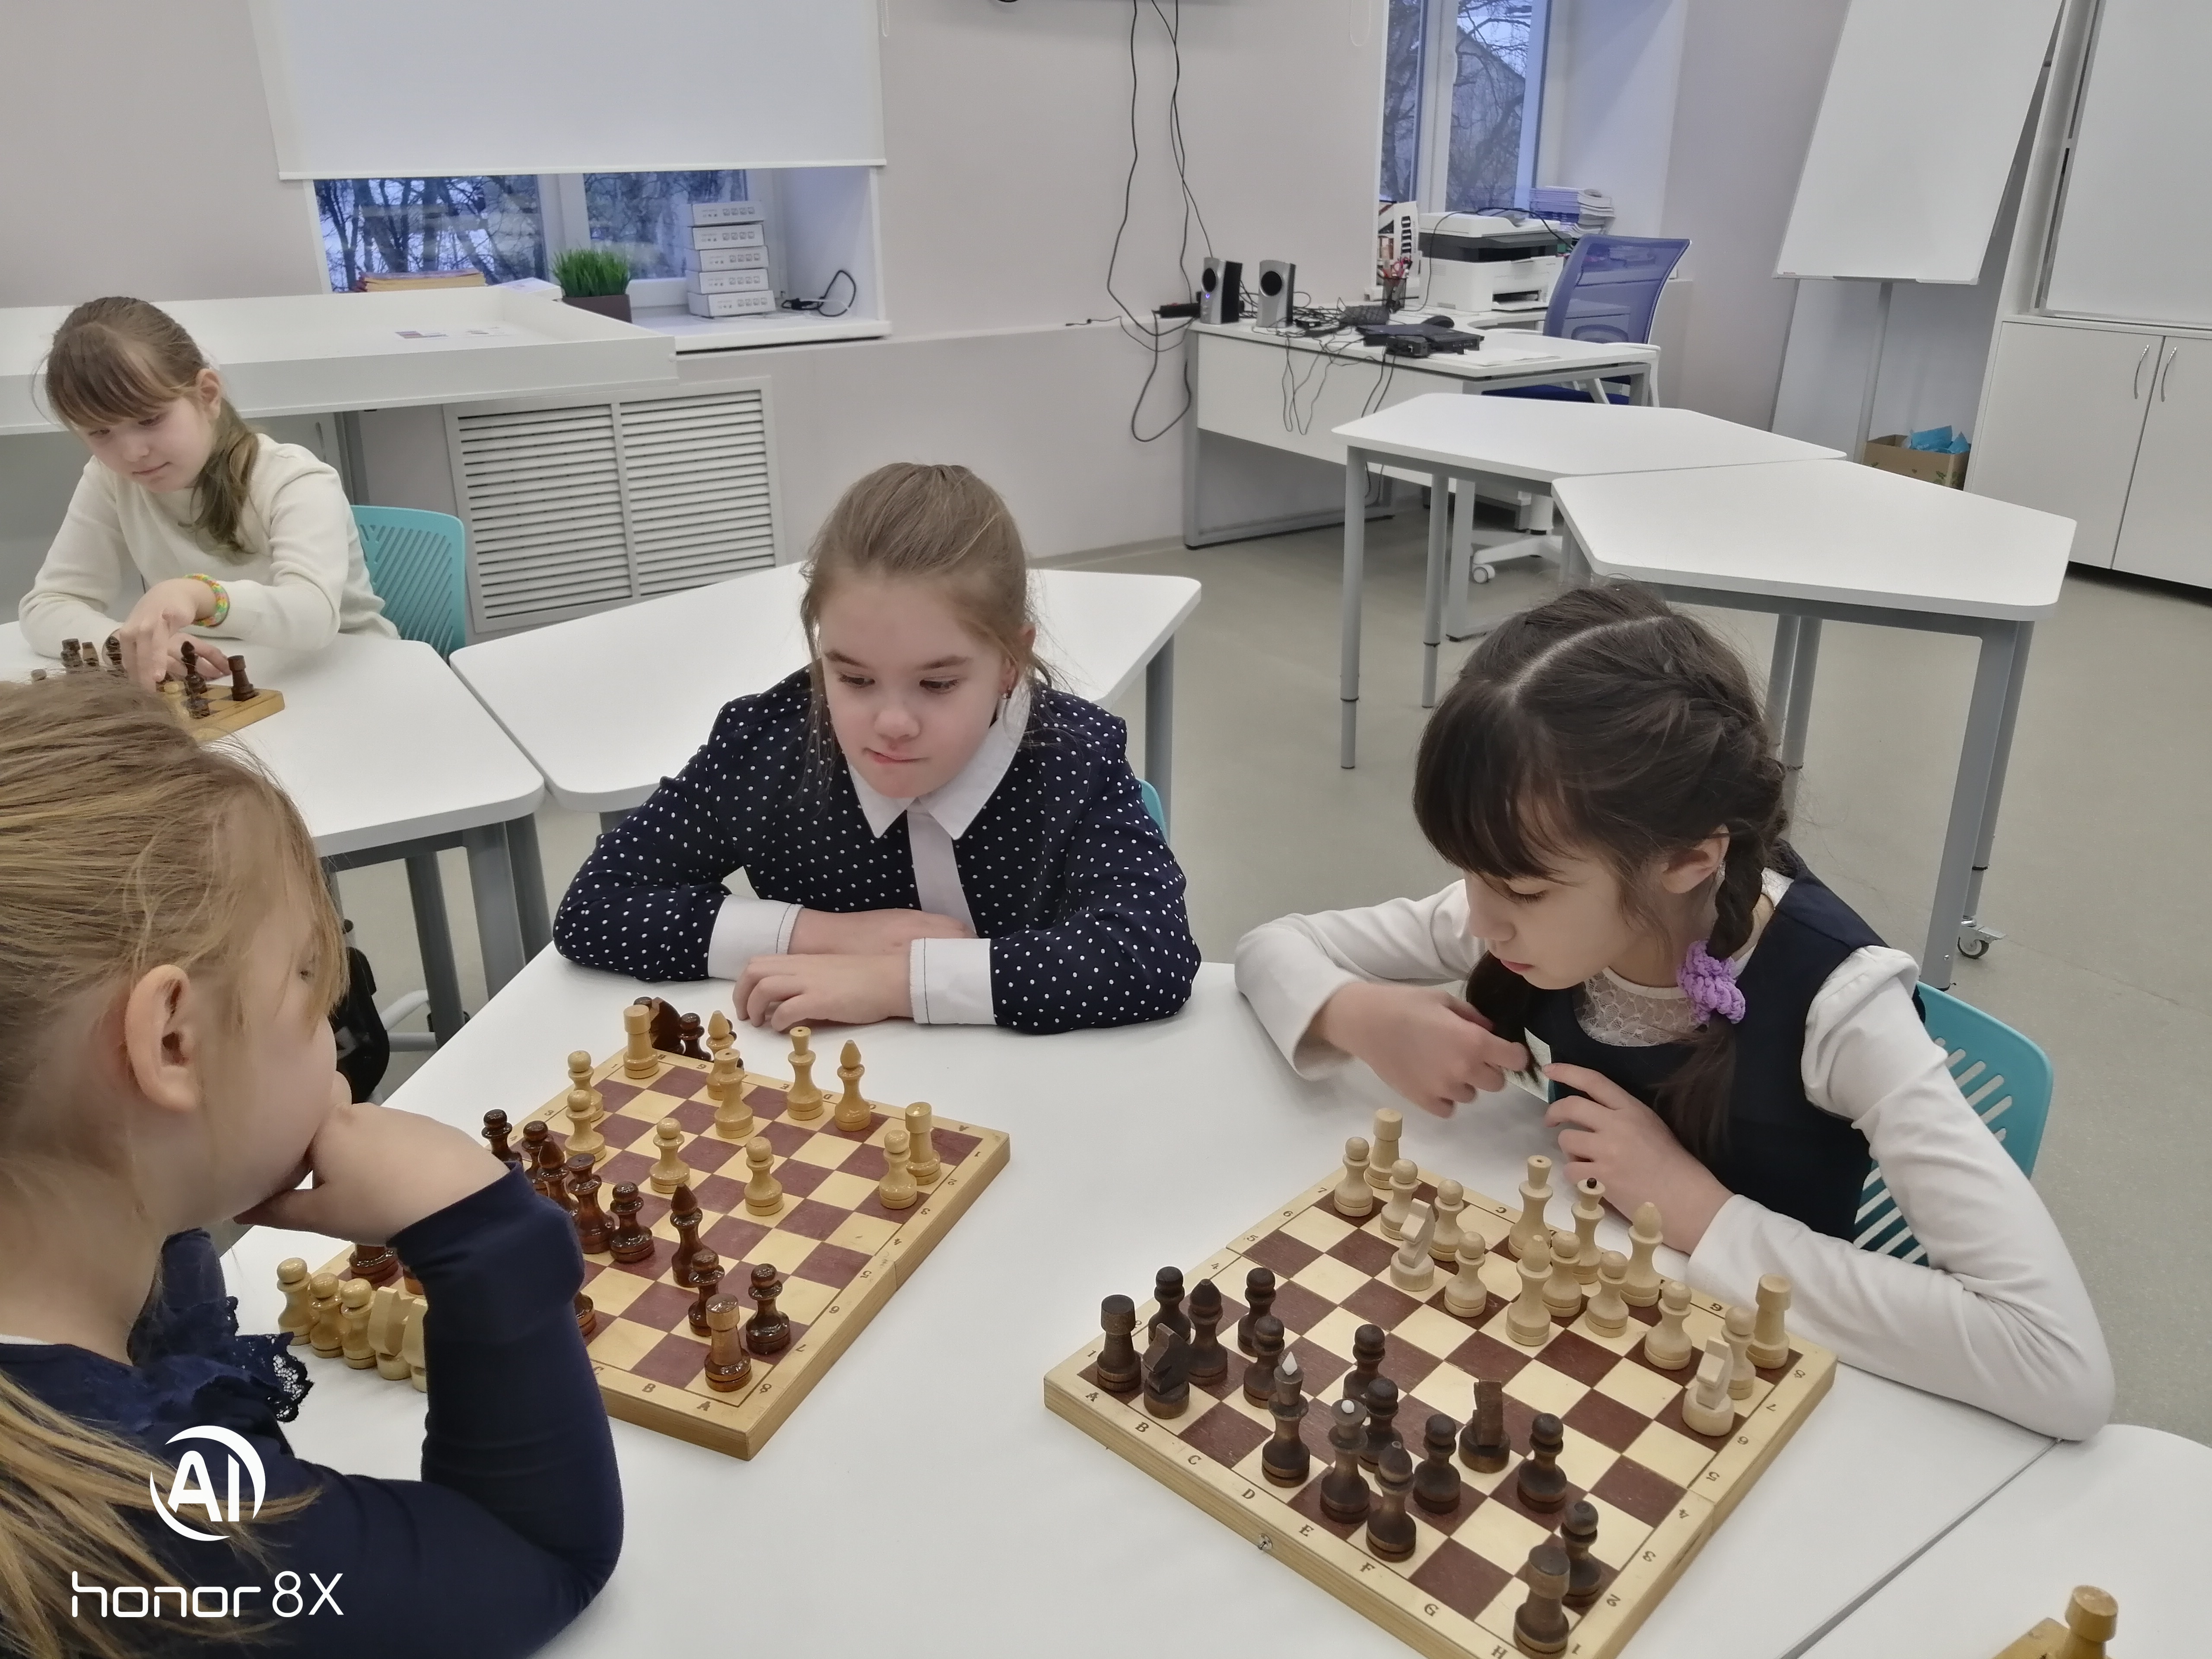 В МБОУ «Зверосовхозская СОШ» реализуется программа внеурочной деятельности «Шахматы».